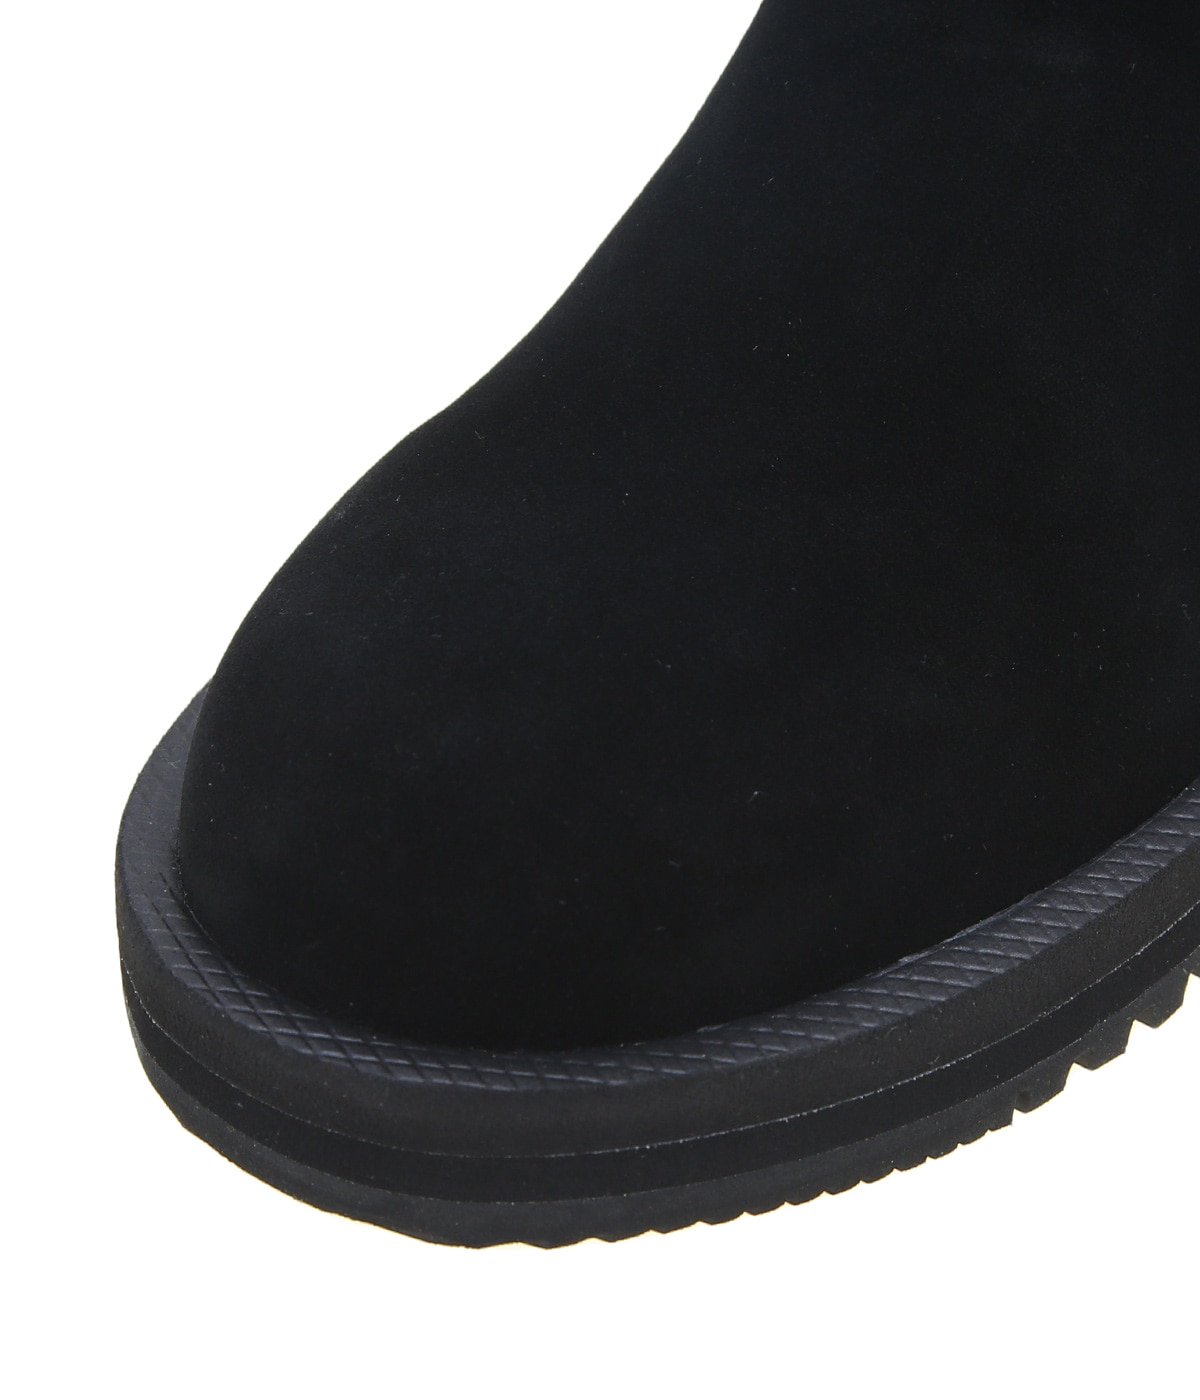 SUICOKE/スイコック/GORE-Sevab Black 新品未使用品 - ブーツ